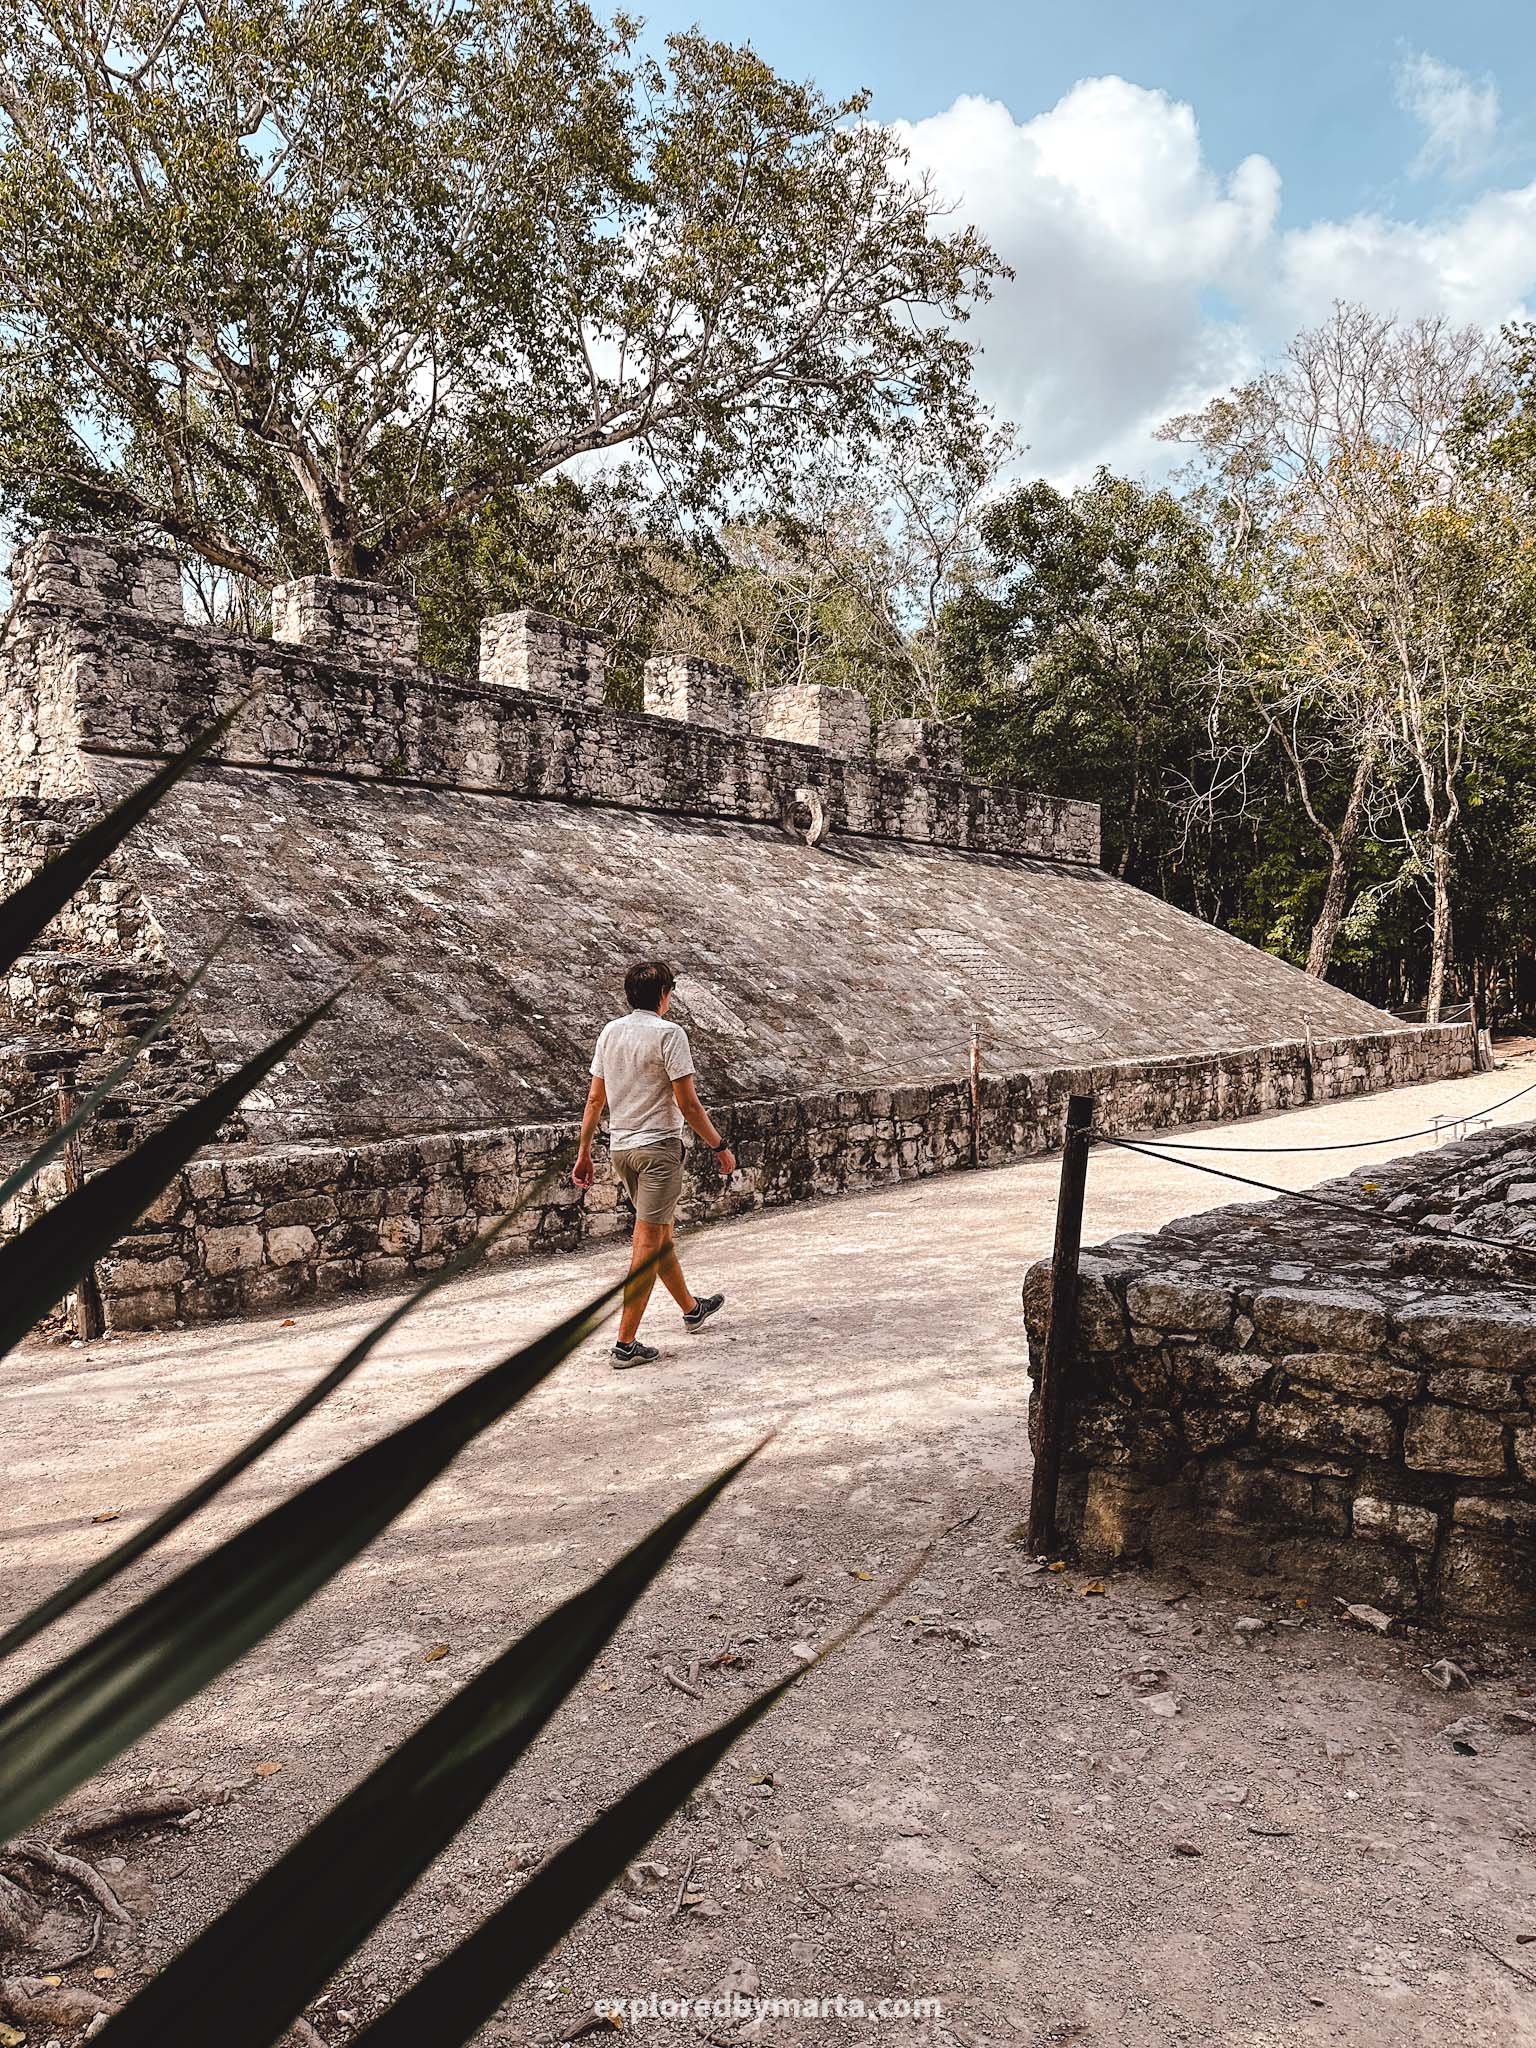 Yucatan Peninsula, Mexico - Mayan pyramids and ruins of an ancient Mayan city Coba at Coba archaeological zone